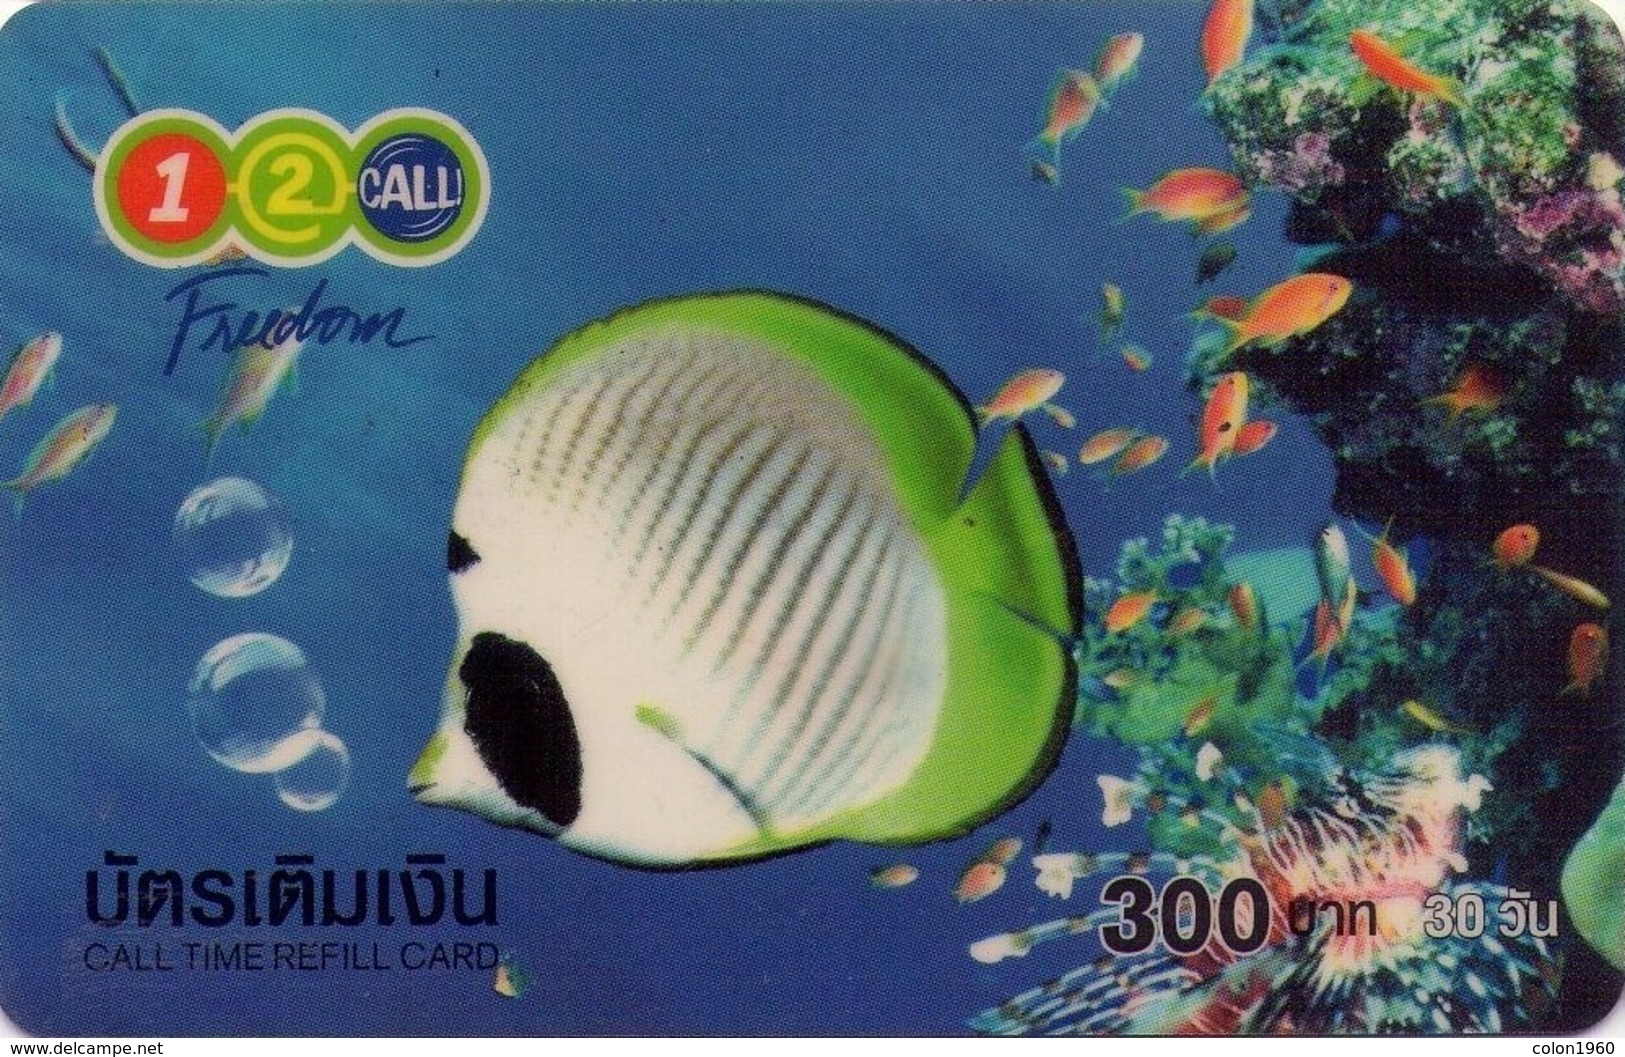 TAILANDIA. PEZ - FISH. Freedom Nature (Plastic) 01. 06/2004. TH-12Call-0123. (057) - Peces